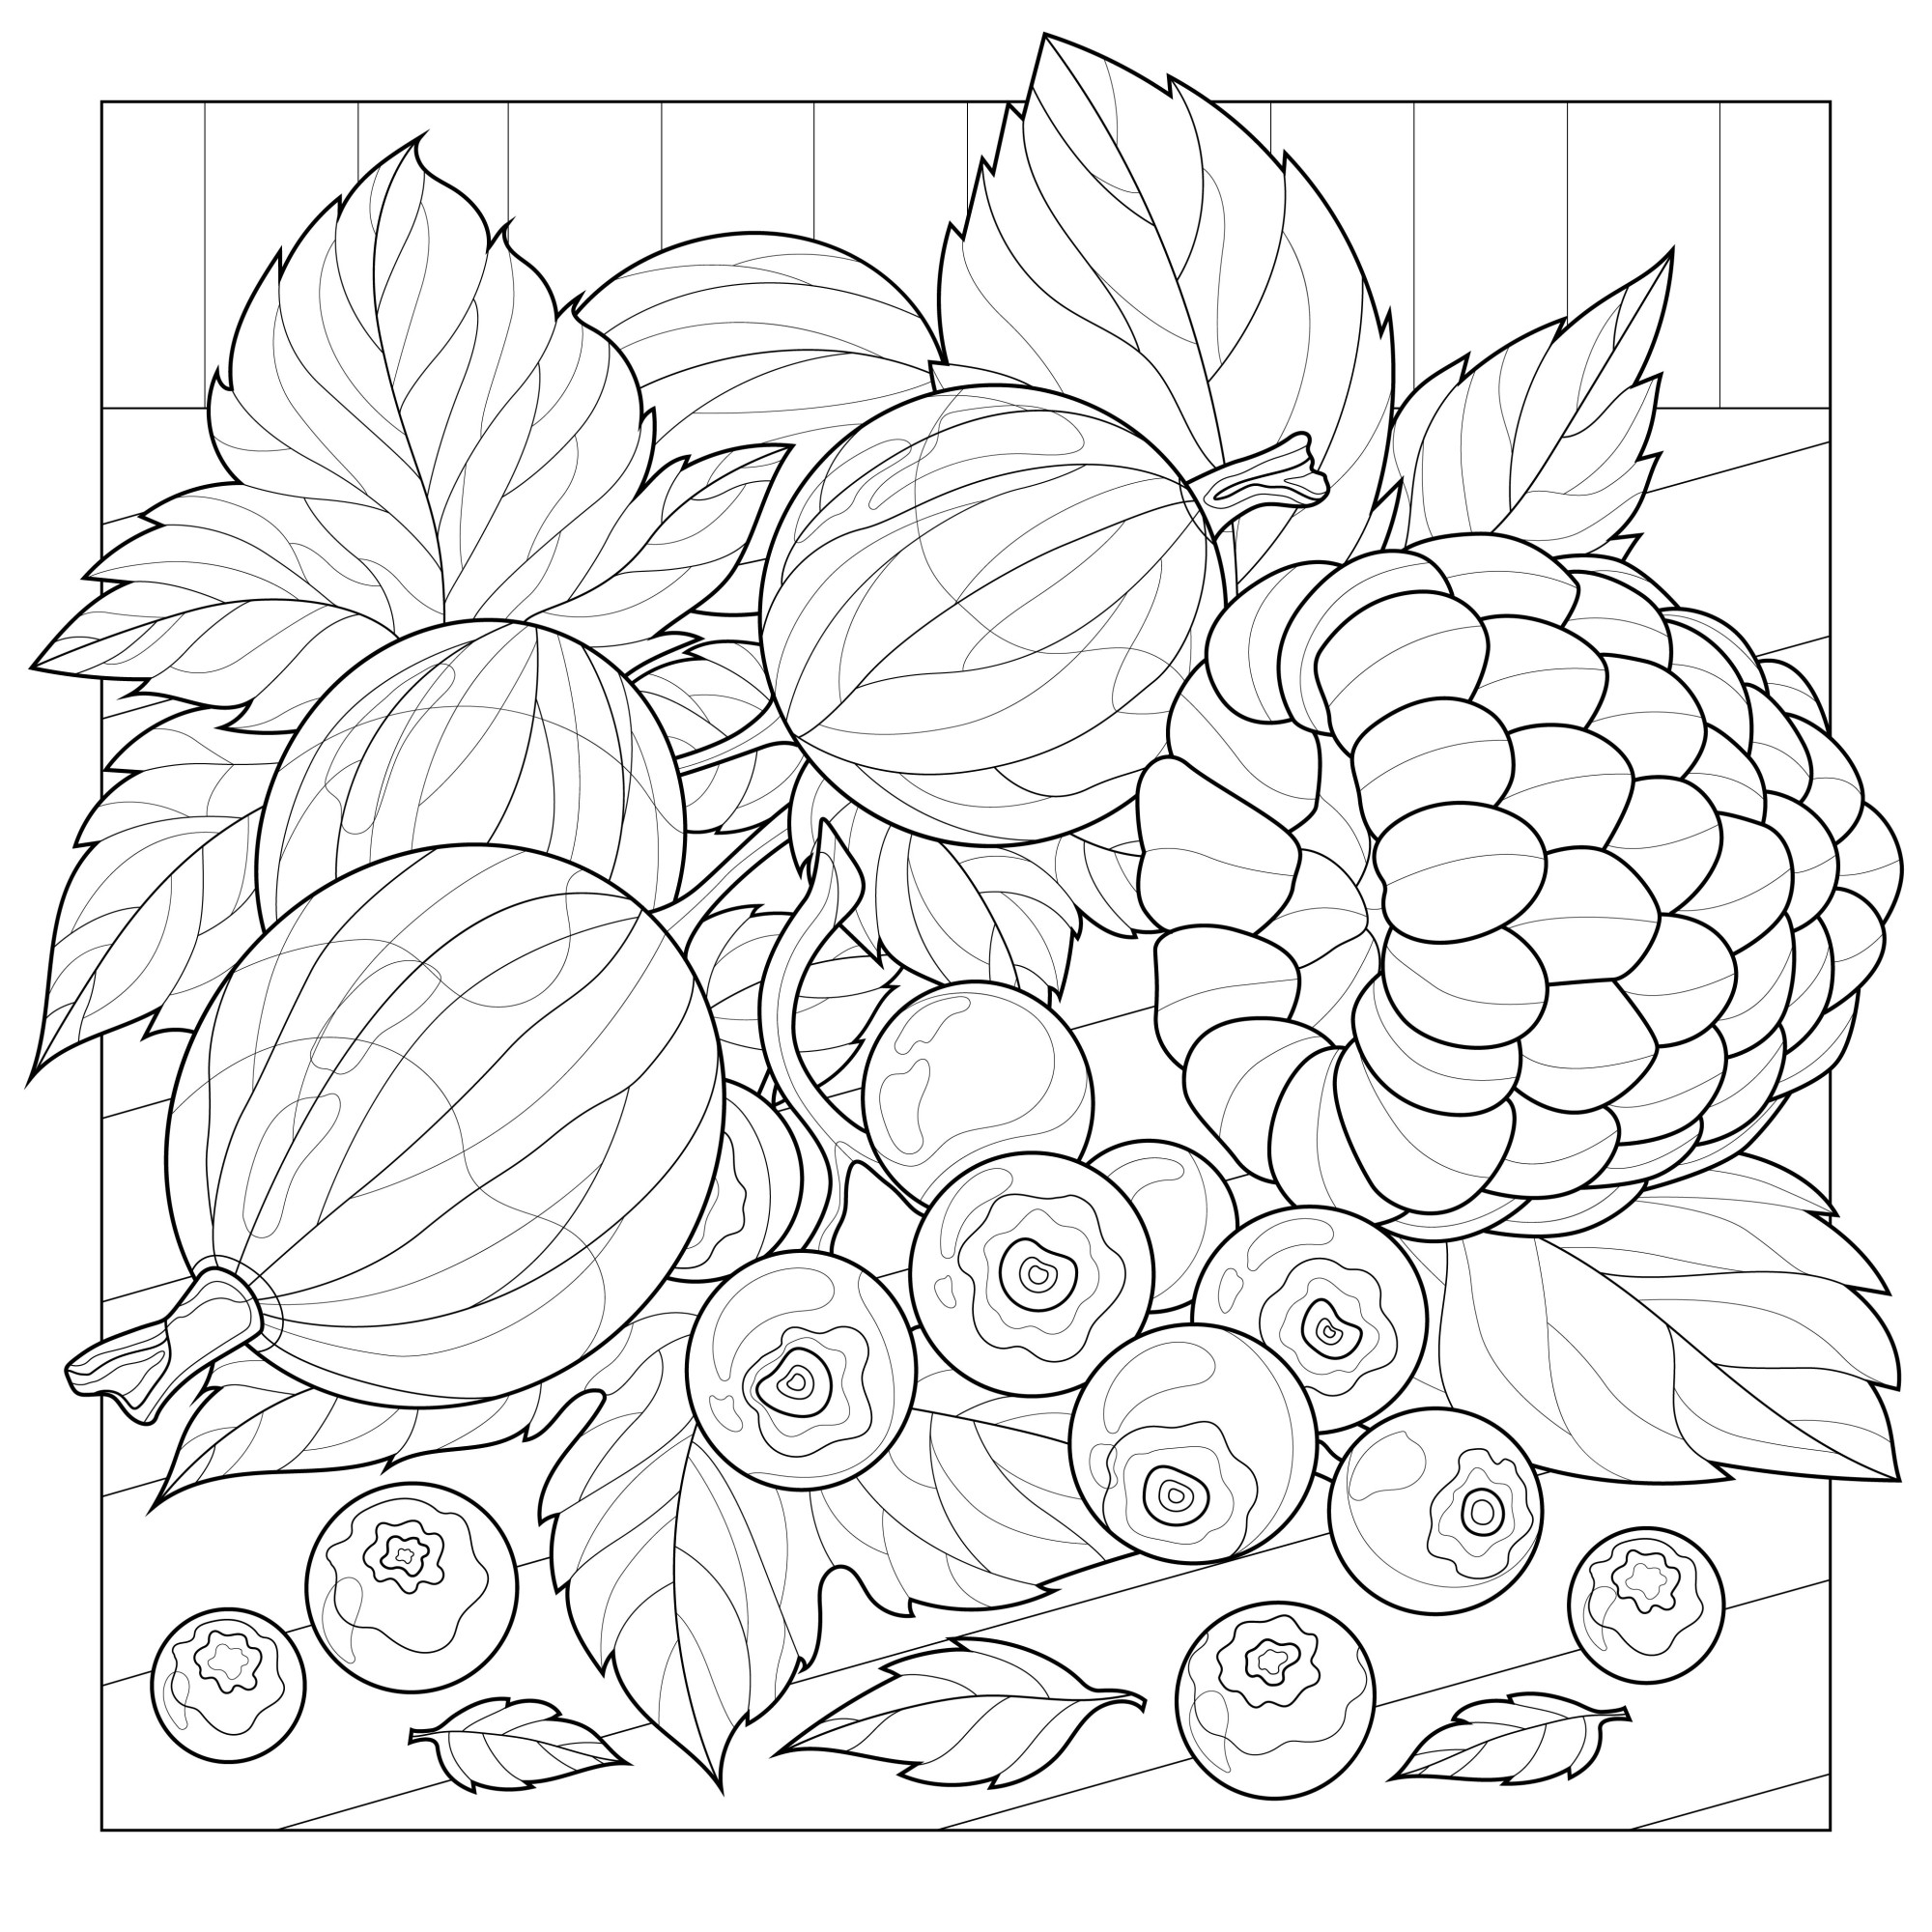 Раскраска для детей: крыжовник с ягодами черники и малины